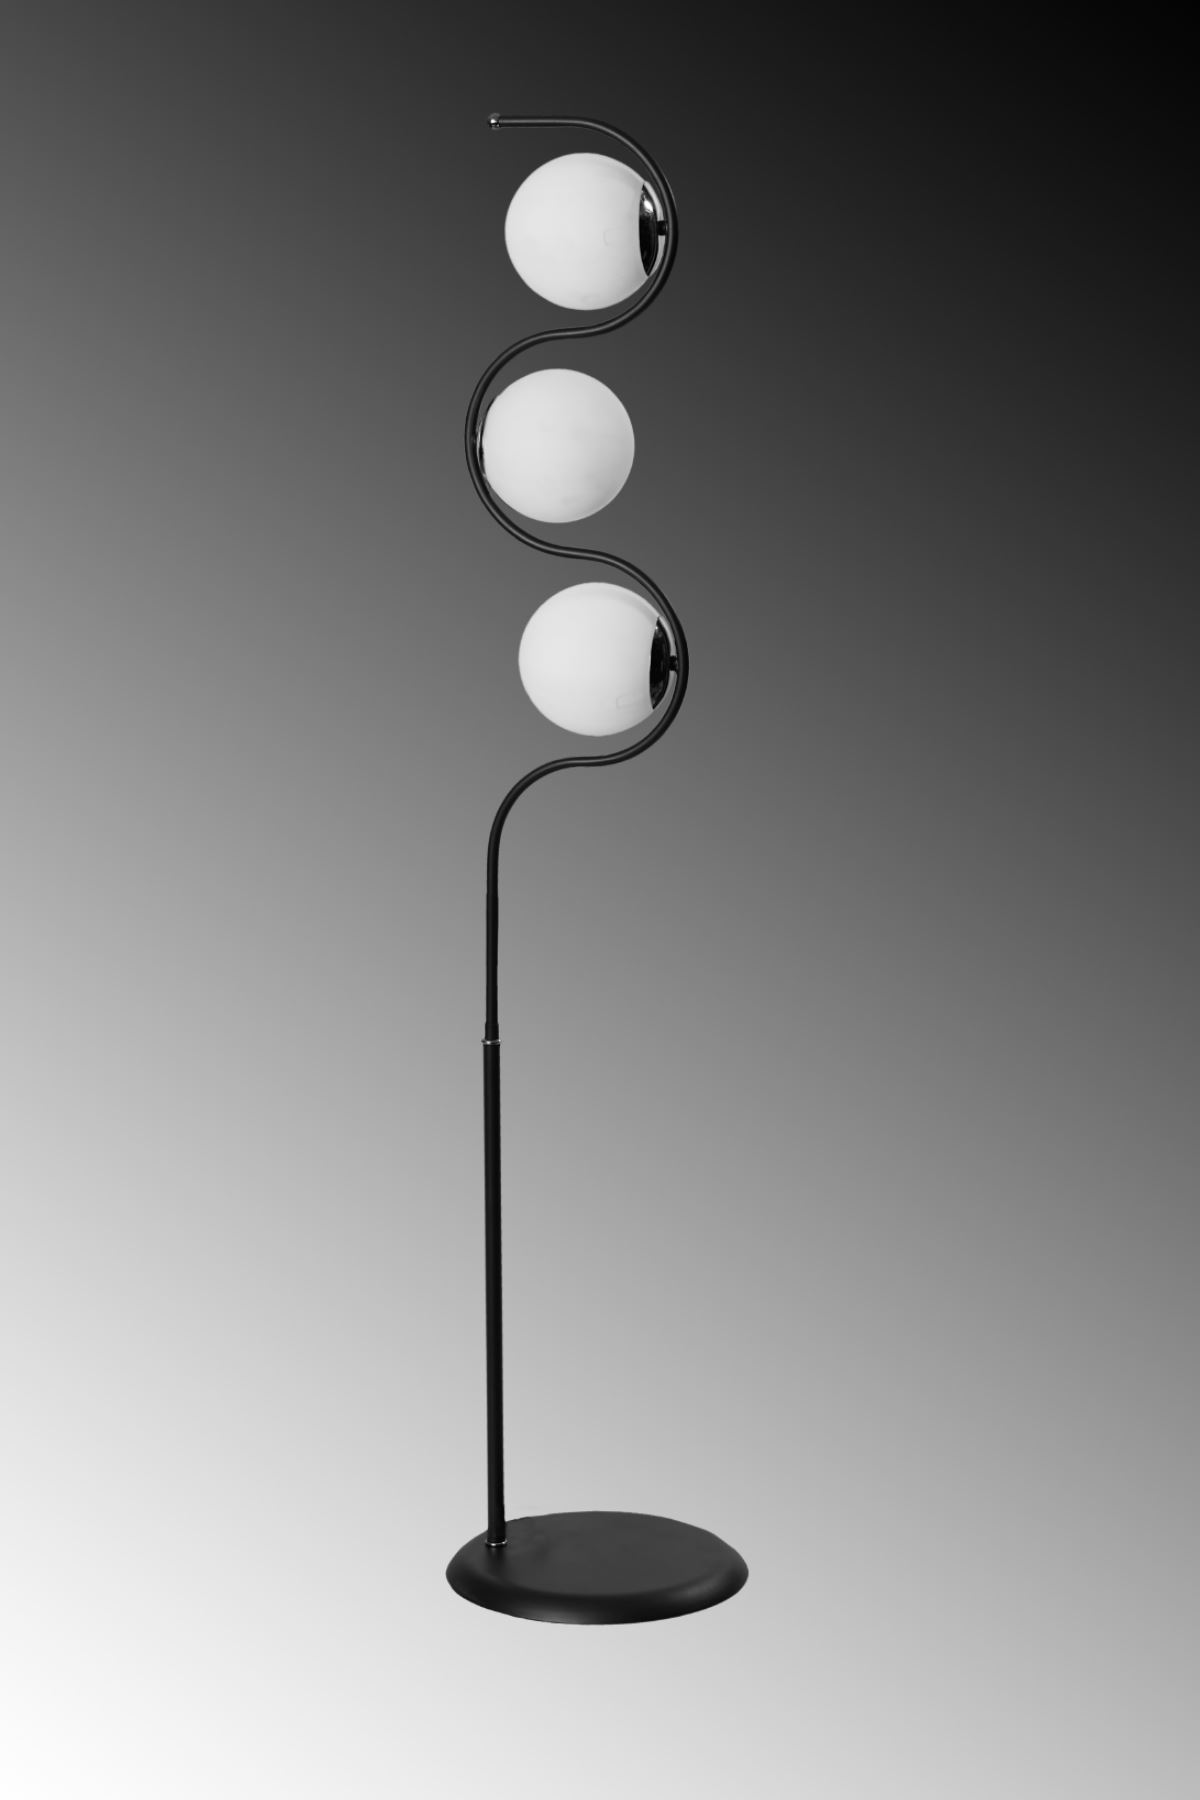 Roxy Siyah-Krom Metal Gövde Beyaz Camlı Tasarım Lüx Yerden Aydınlatma Lambader